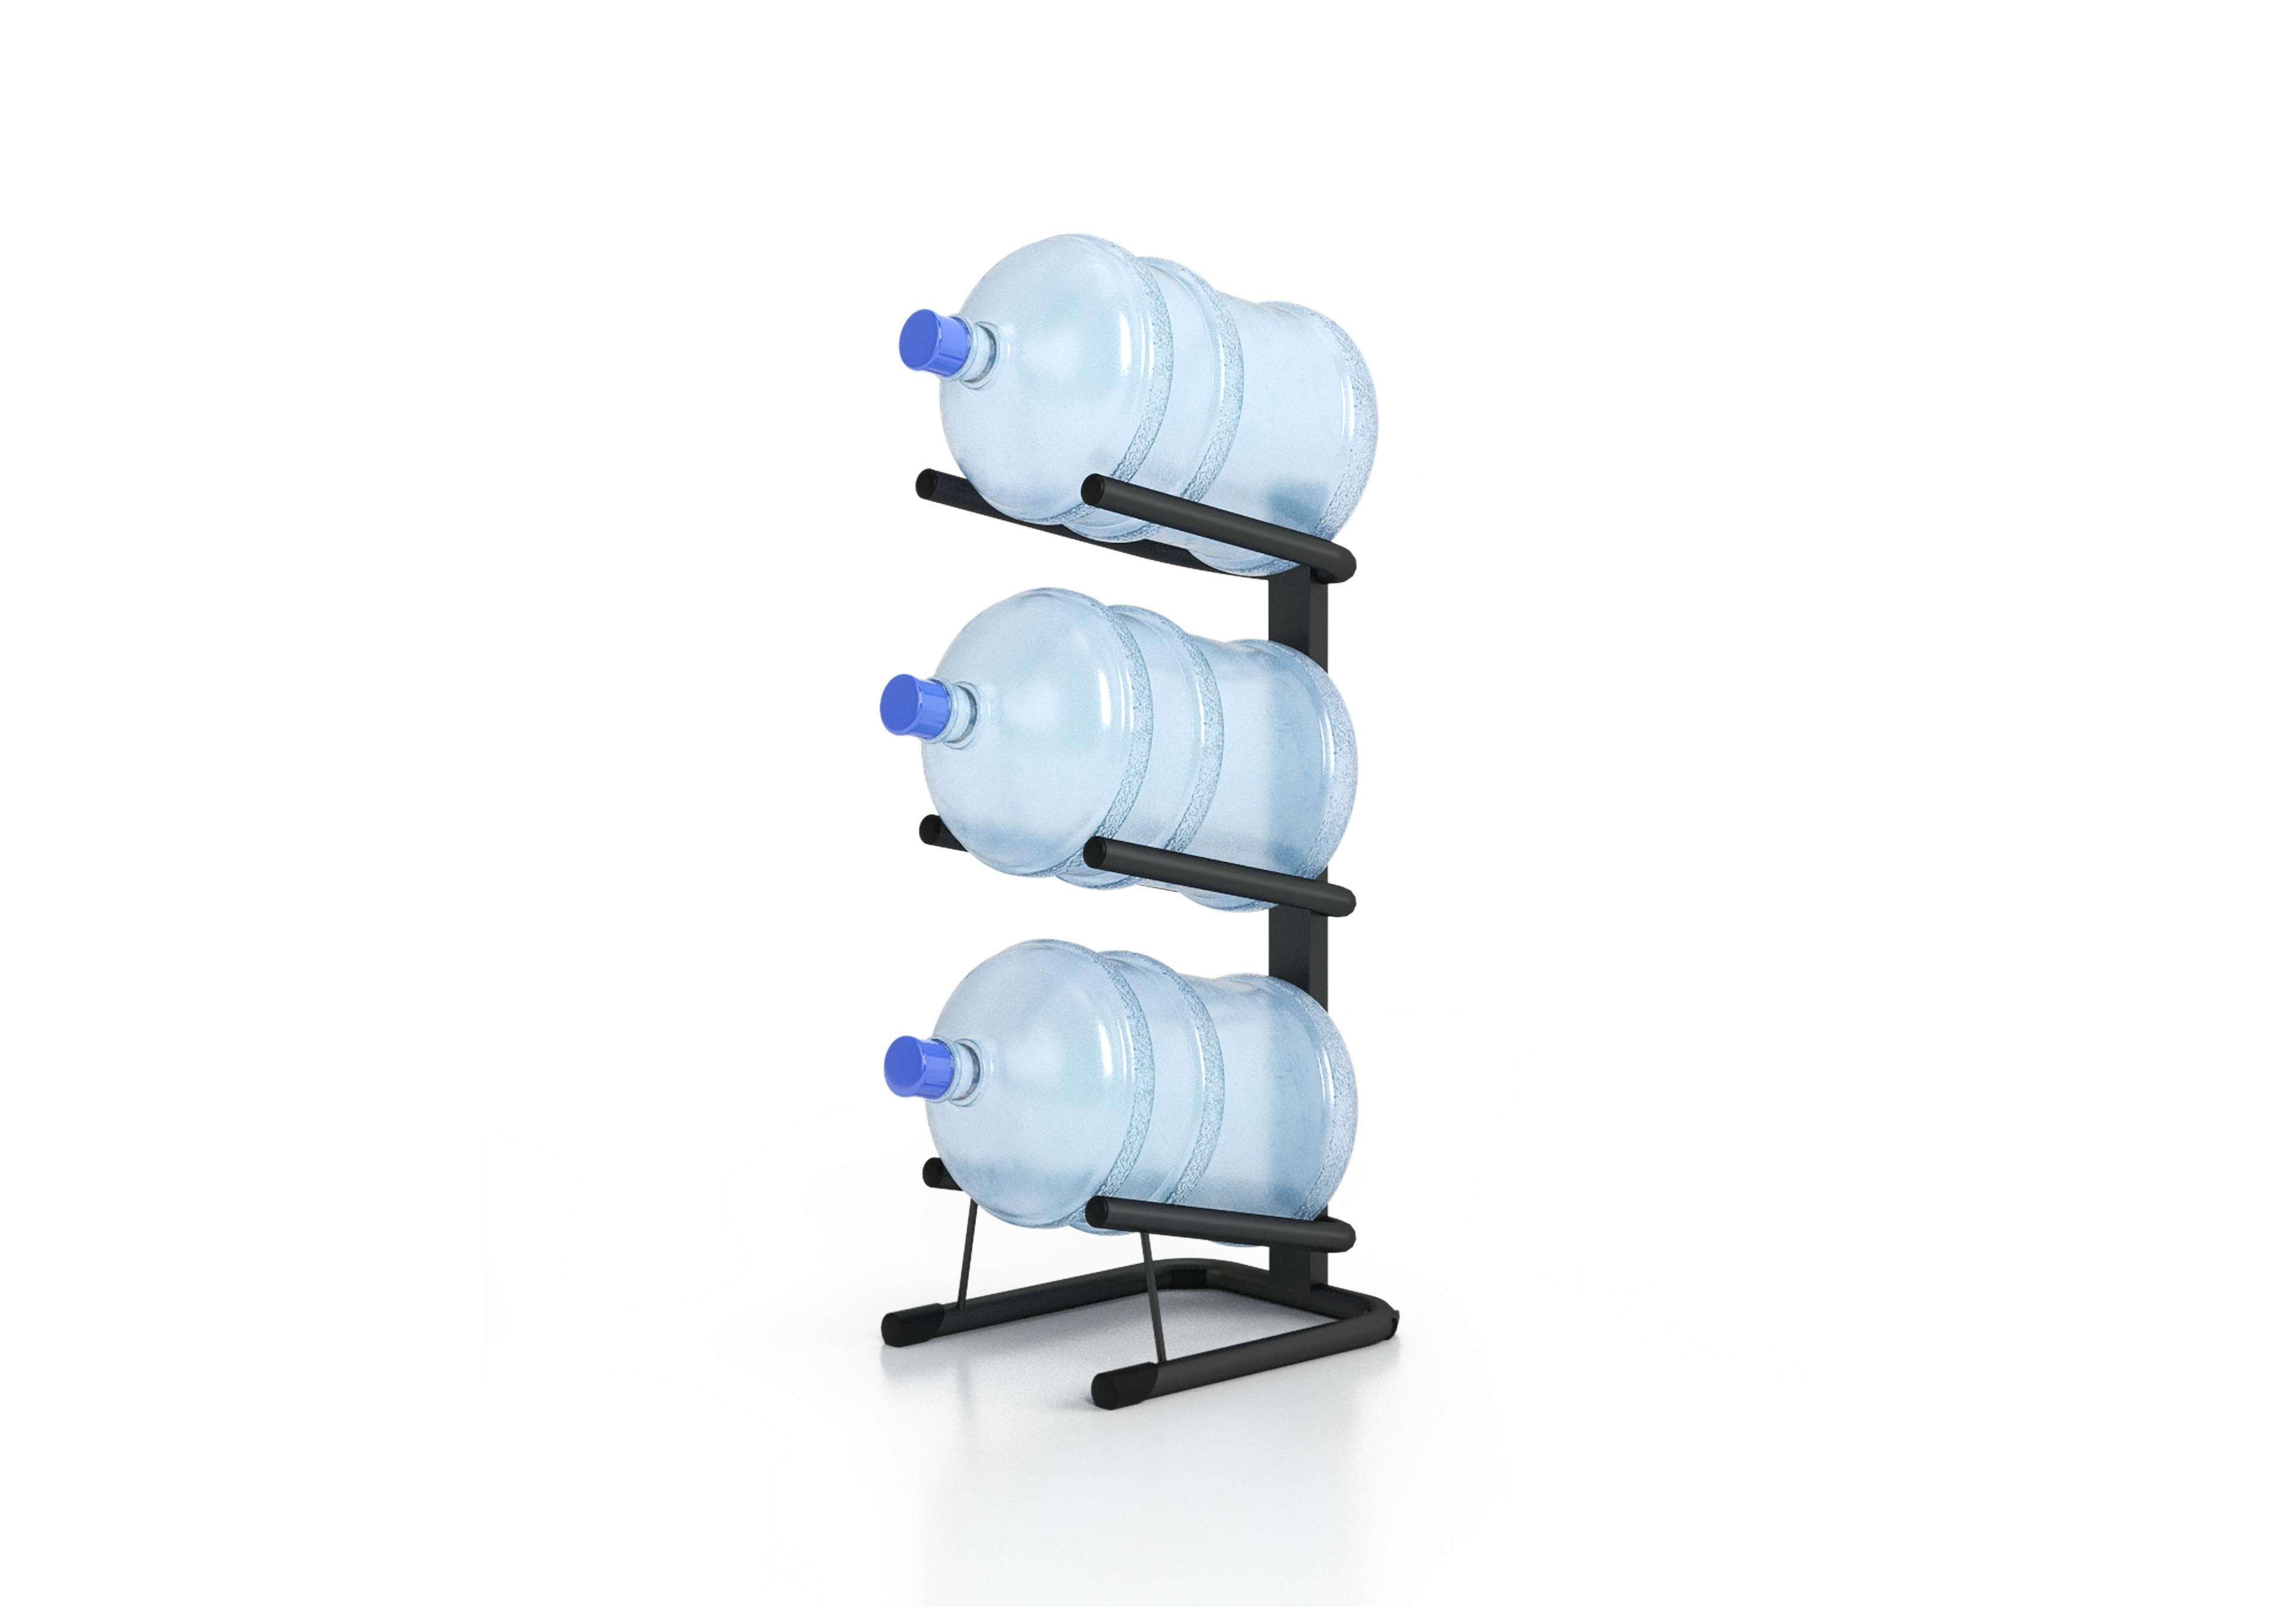 19 литров стойка. Стойка для 3 бутылей "Аква-3". Подставка для воды 19 литров. Стойка для воды 19 литров. Стеллаж подставка для бутылей.